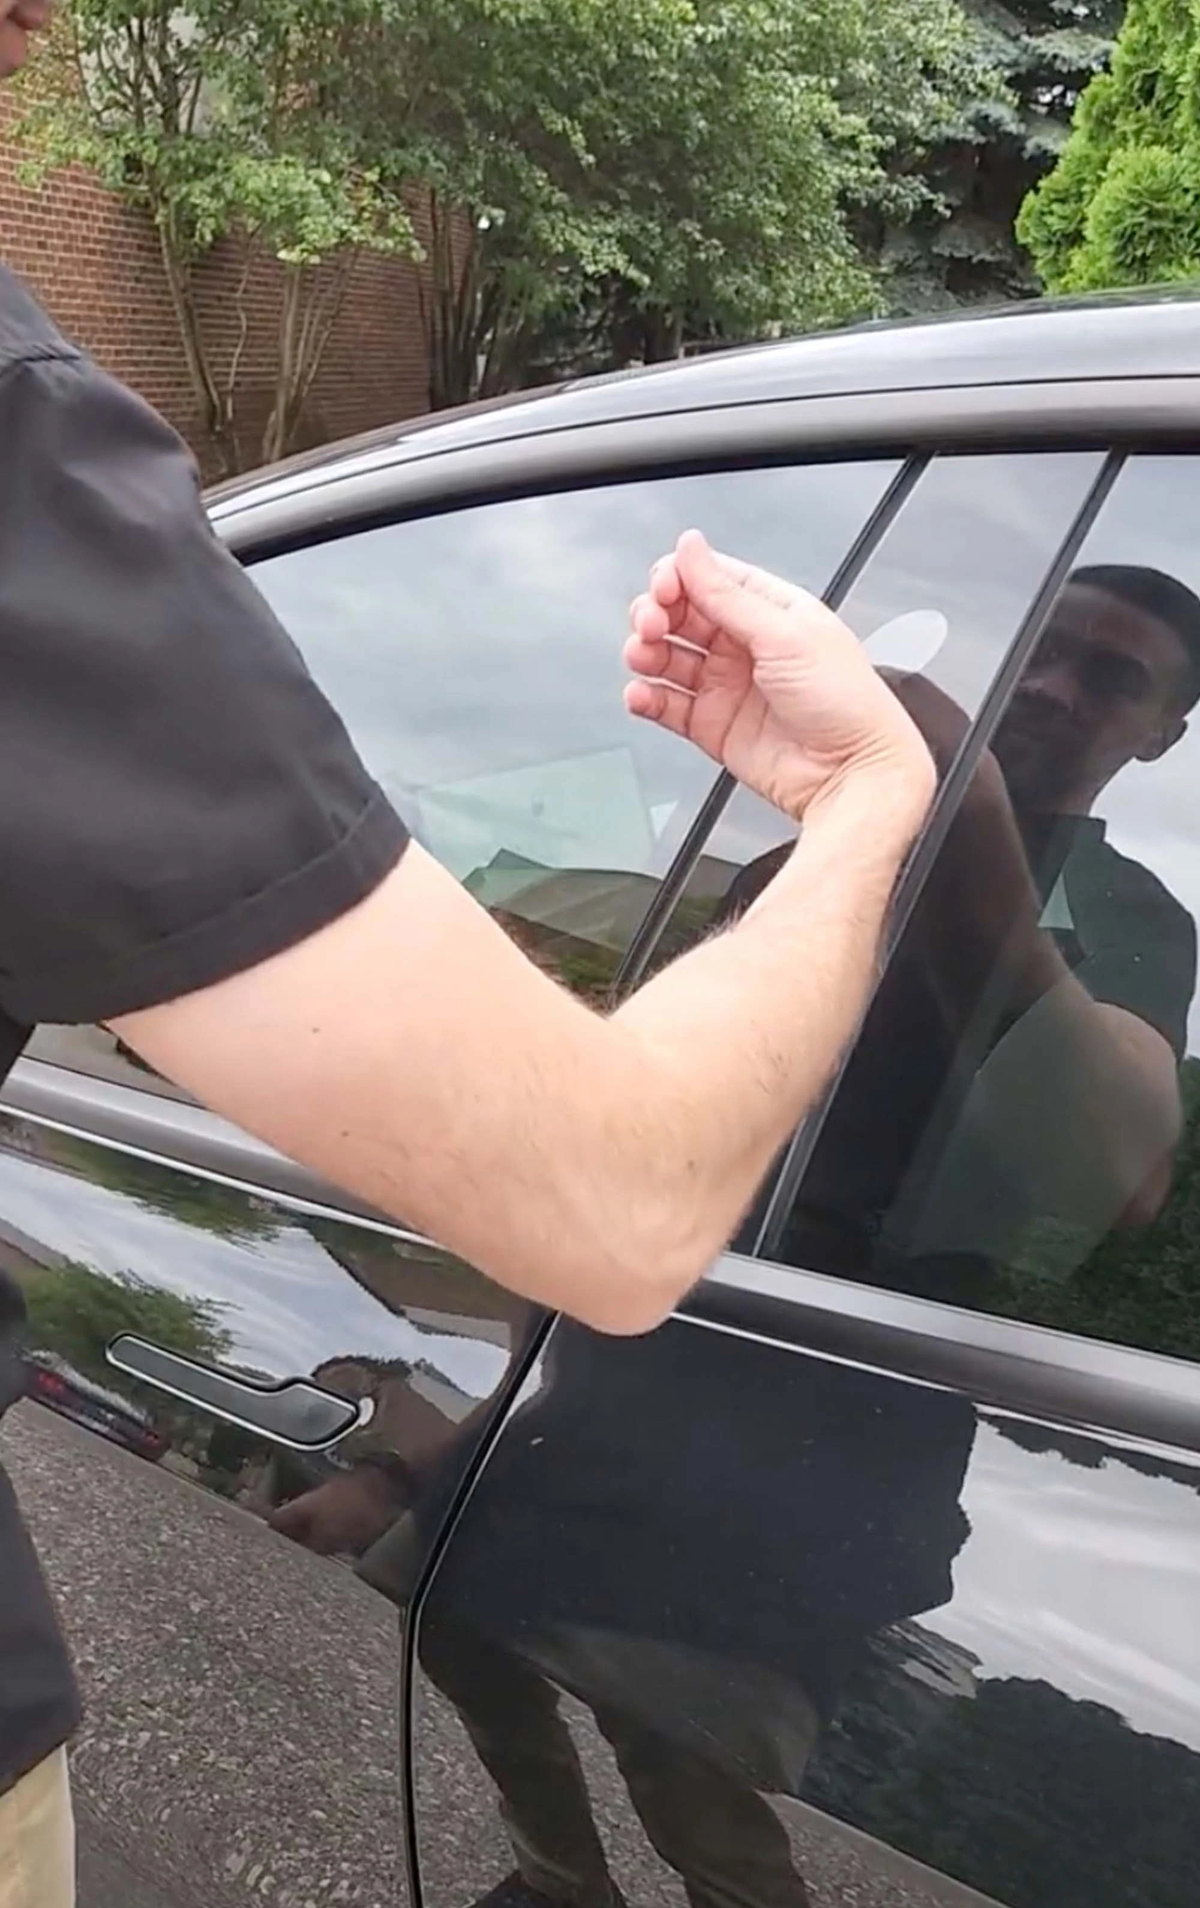 En EEUU un hombre se implantó las llaves de su auto